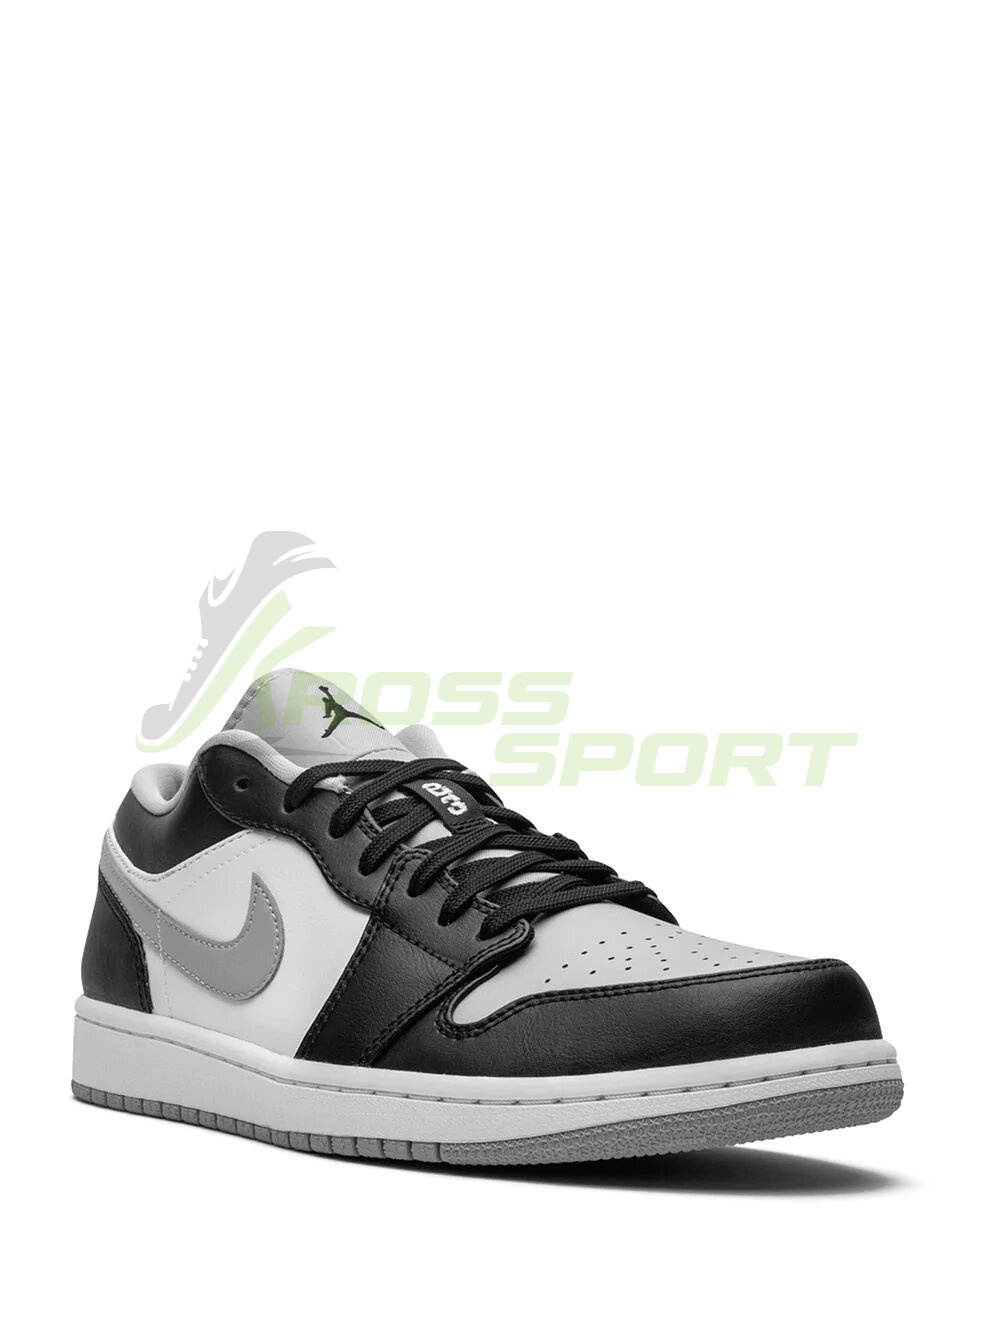  Nike Air Jordan 1 Low Grey\Black